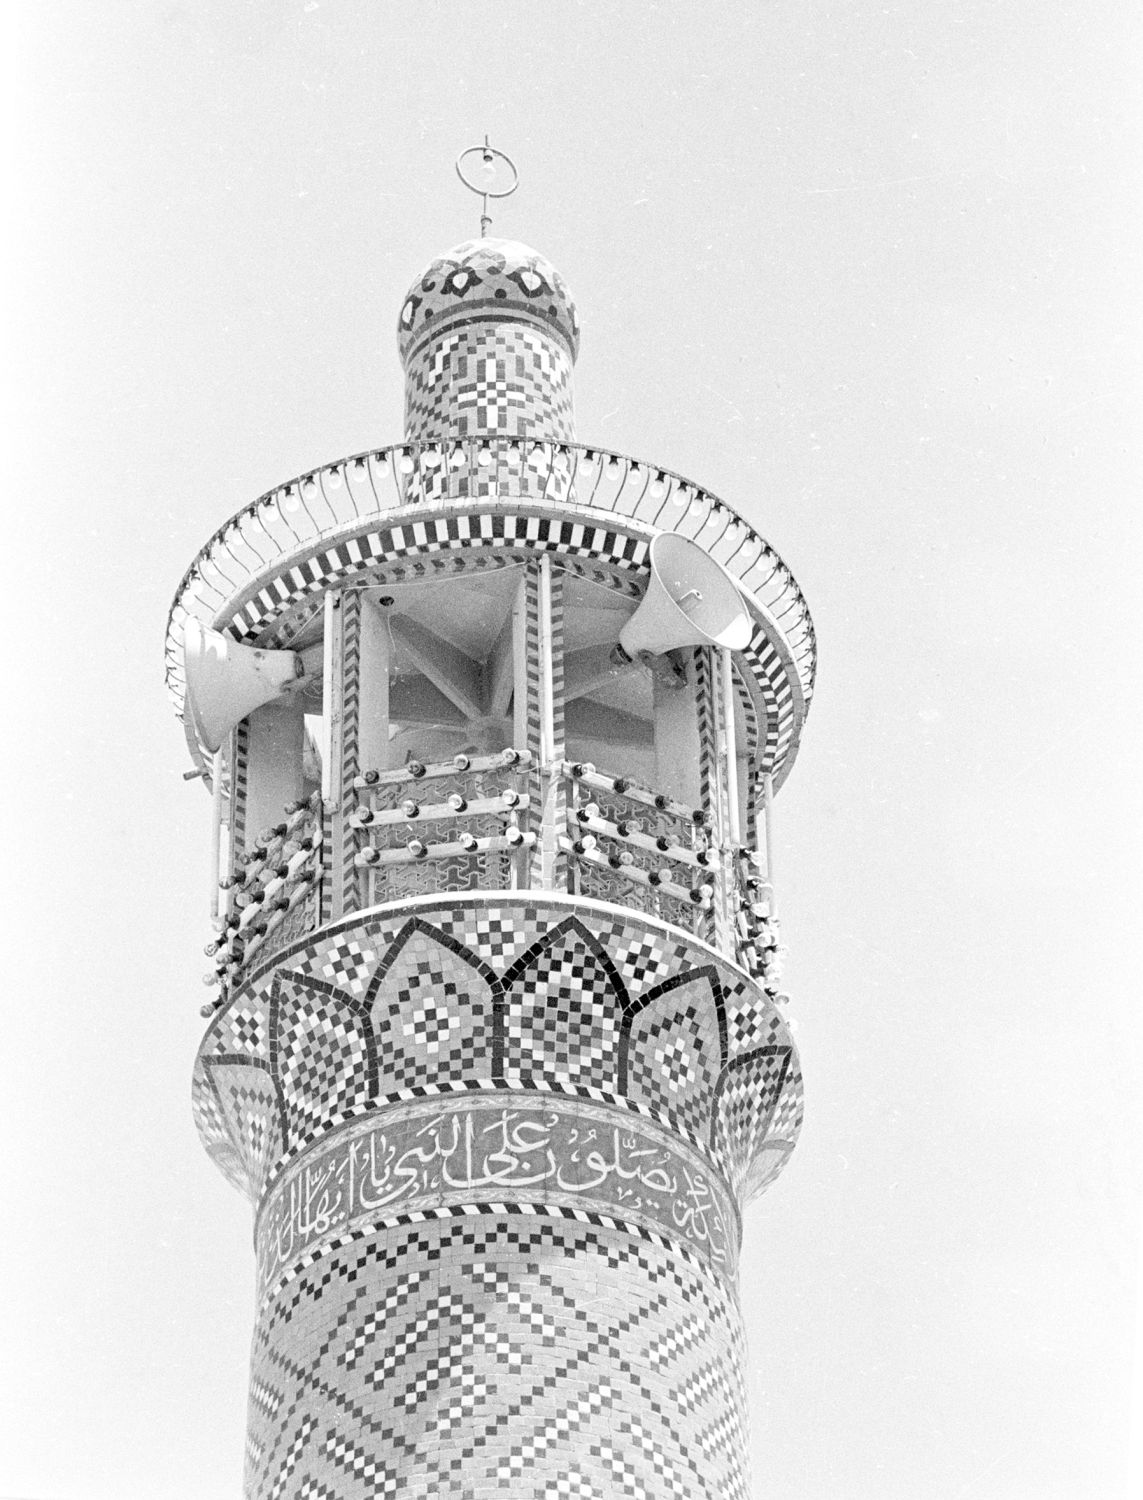 Top of minaret.